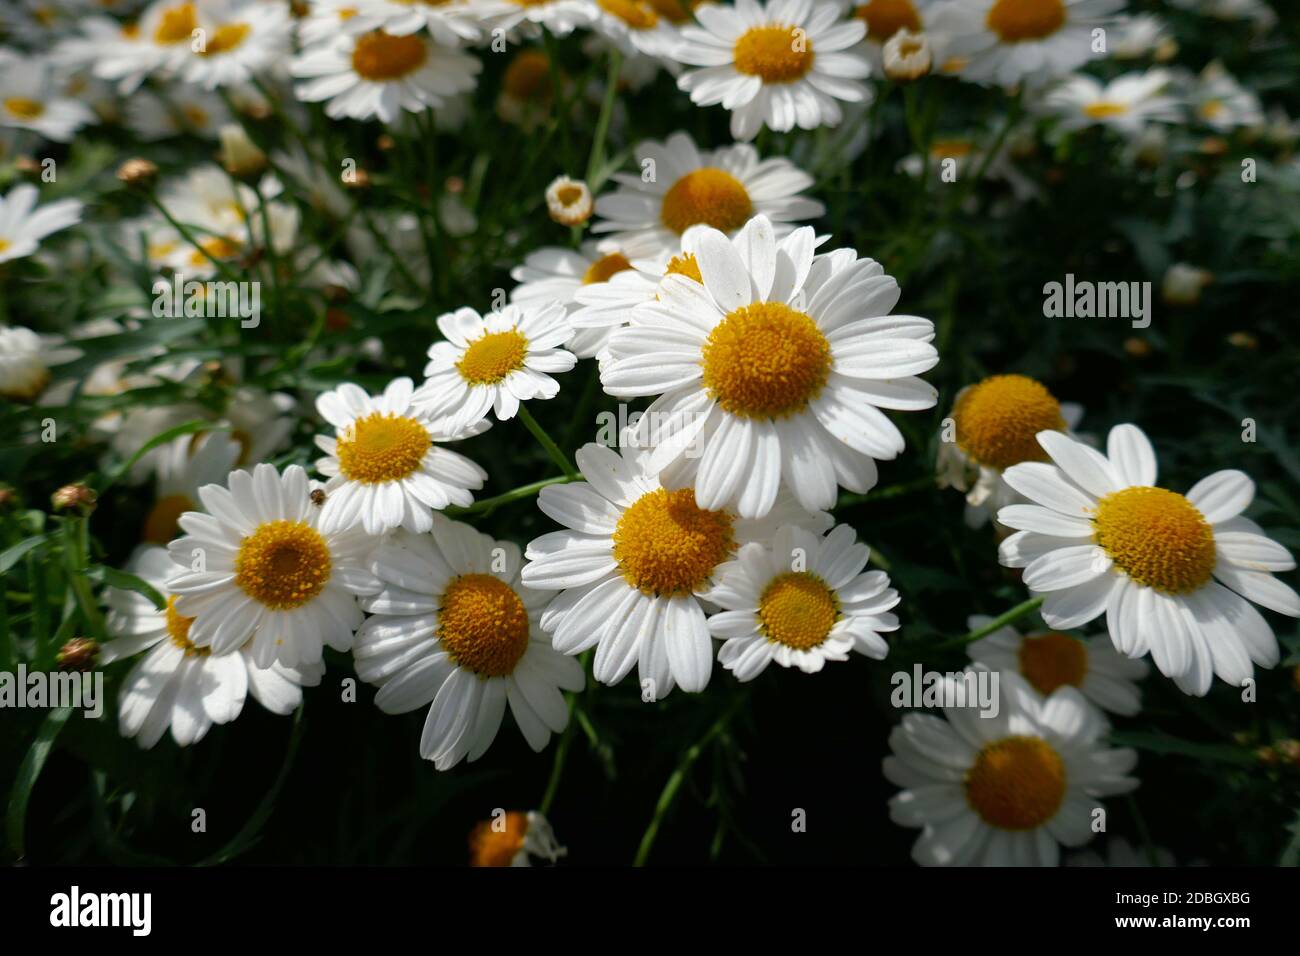 white shrub daisies Stock Photo